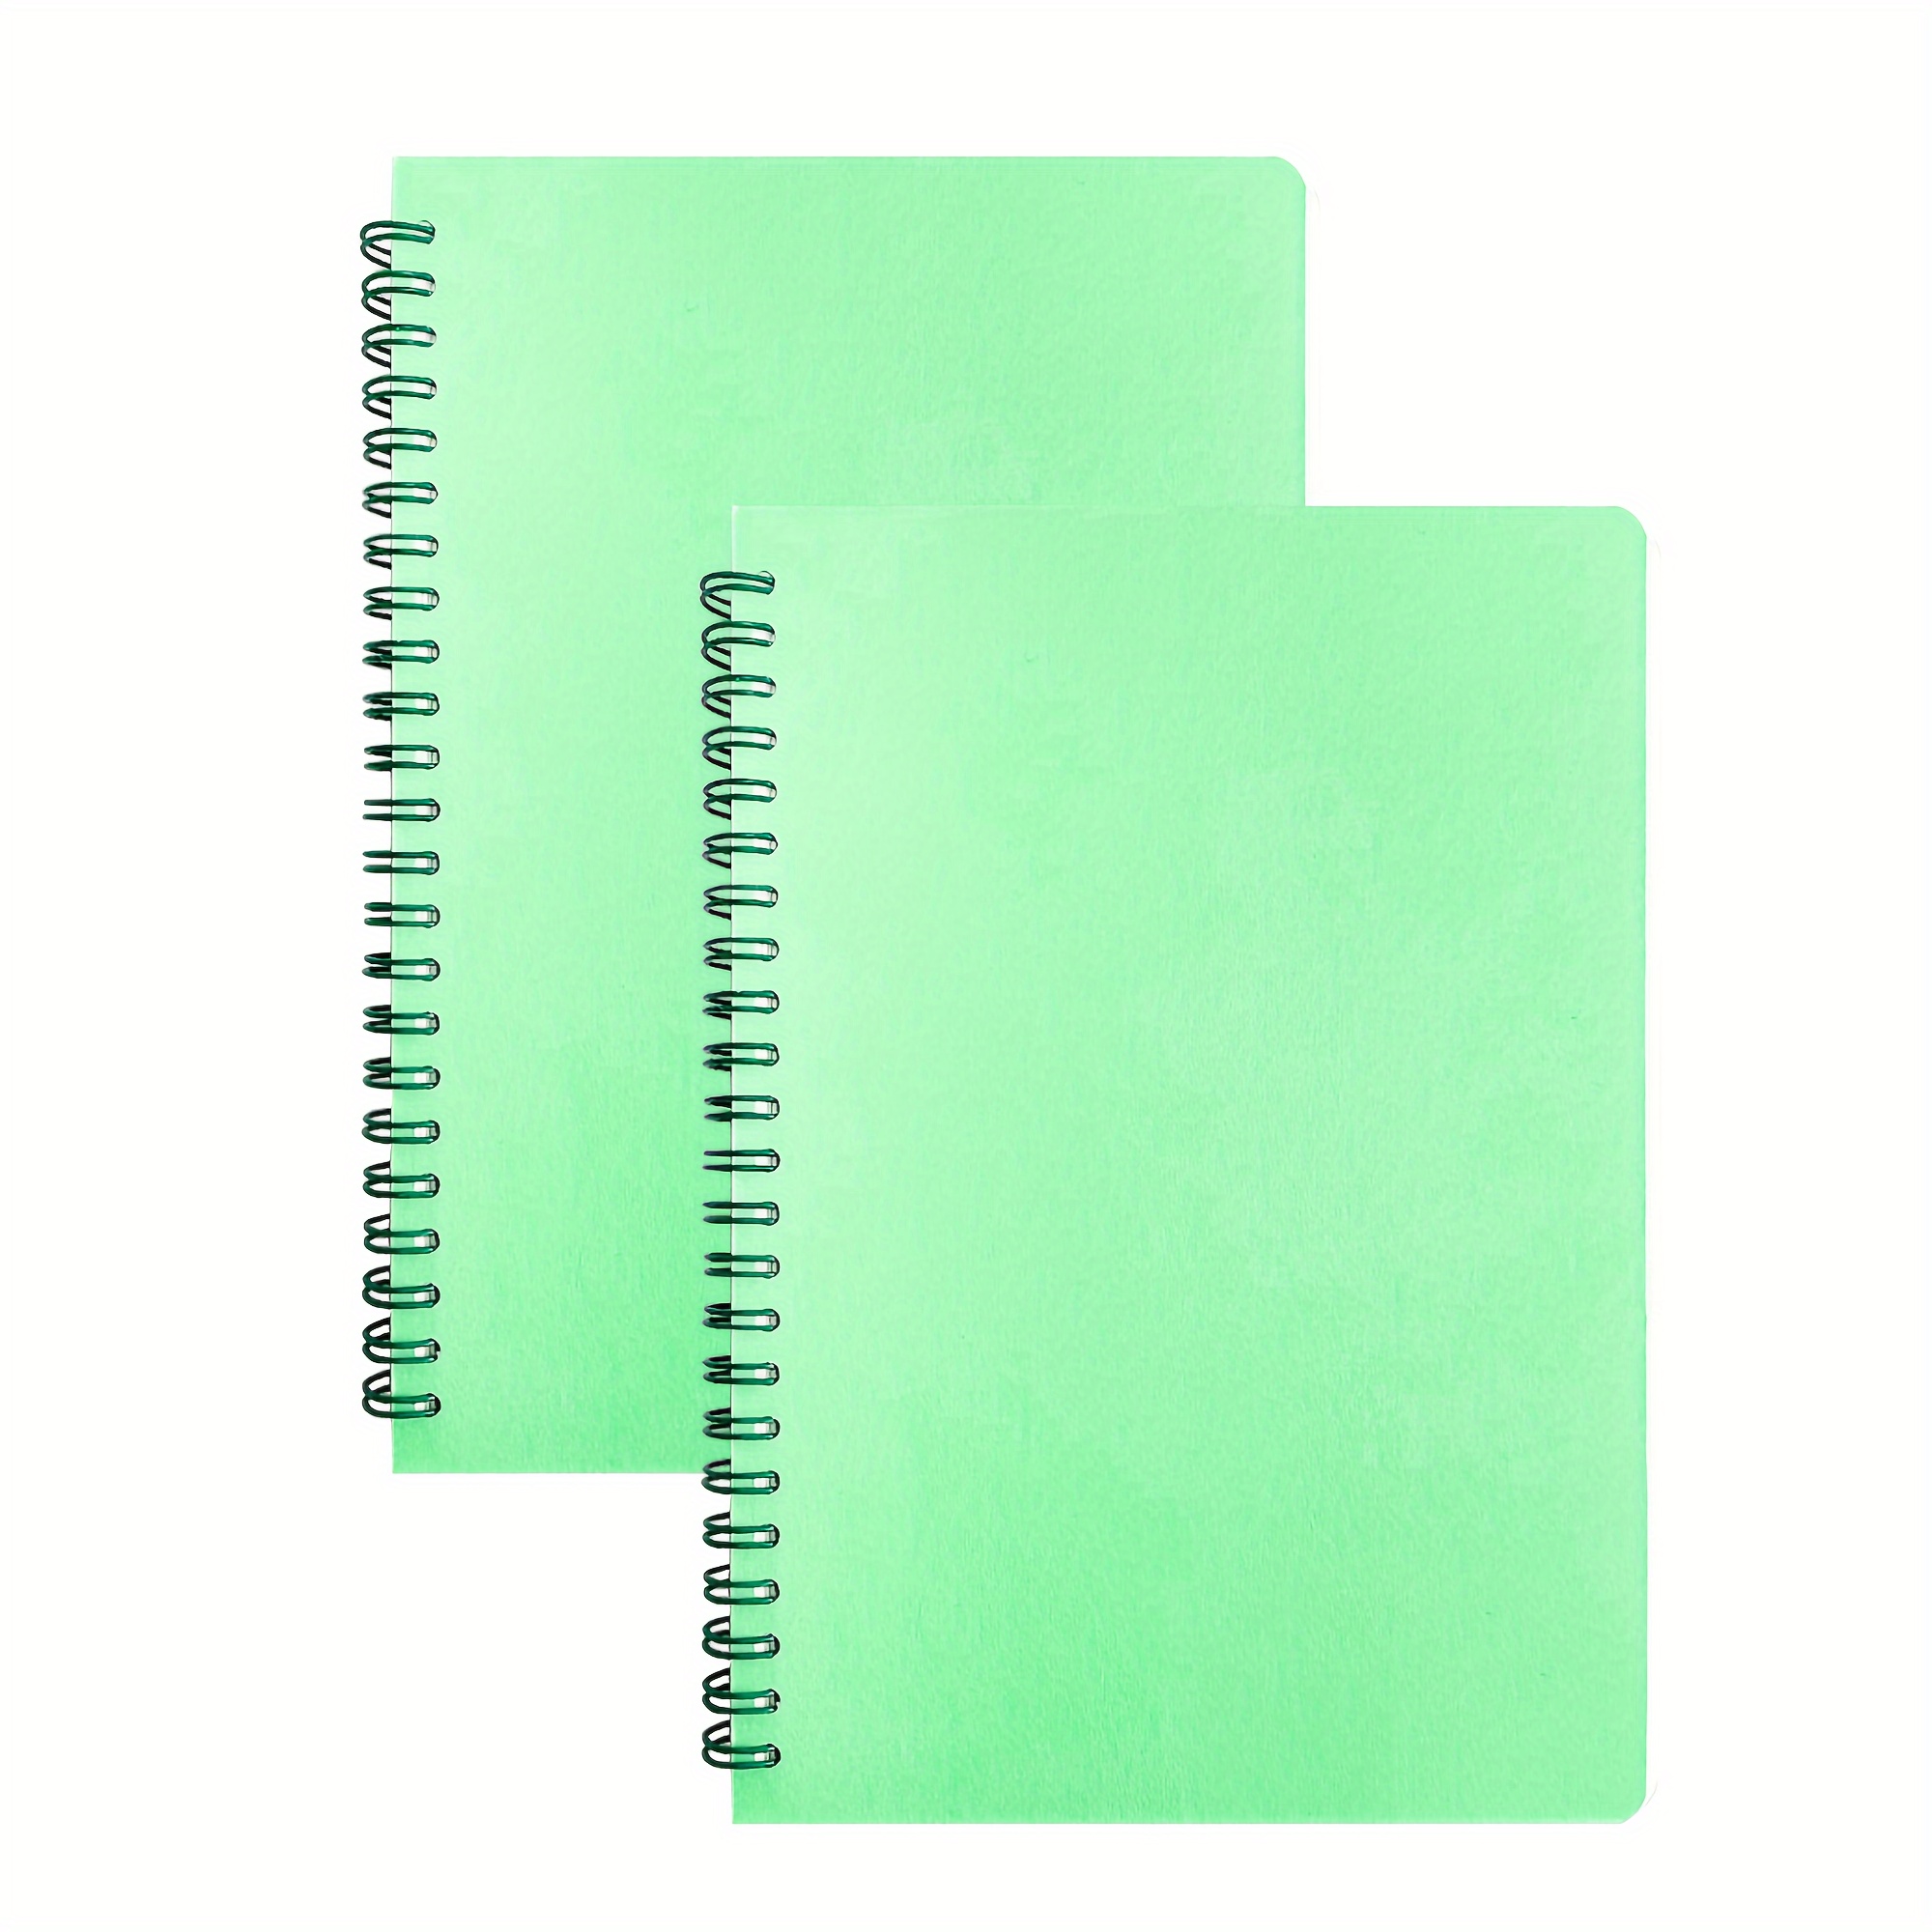 Quaderno puntinato A4: Notebook con griglia a puntini per appunti